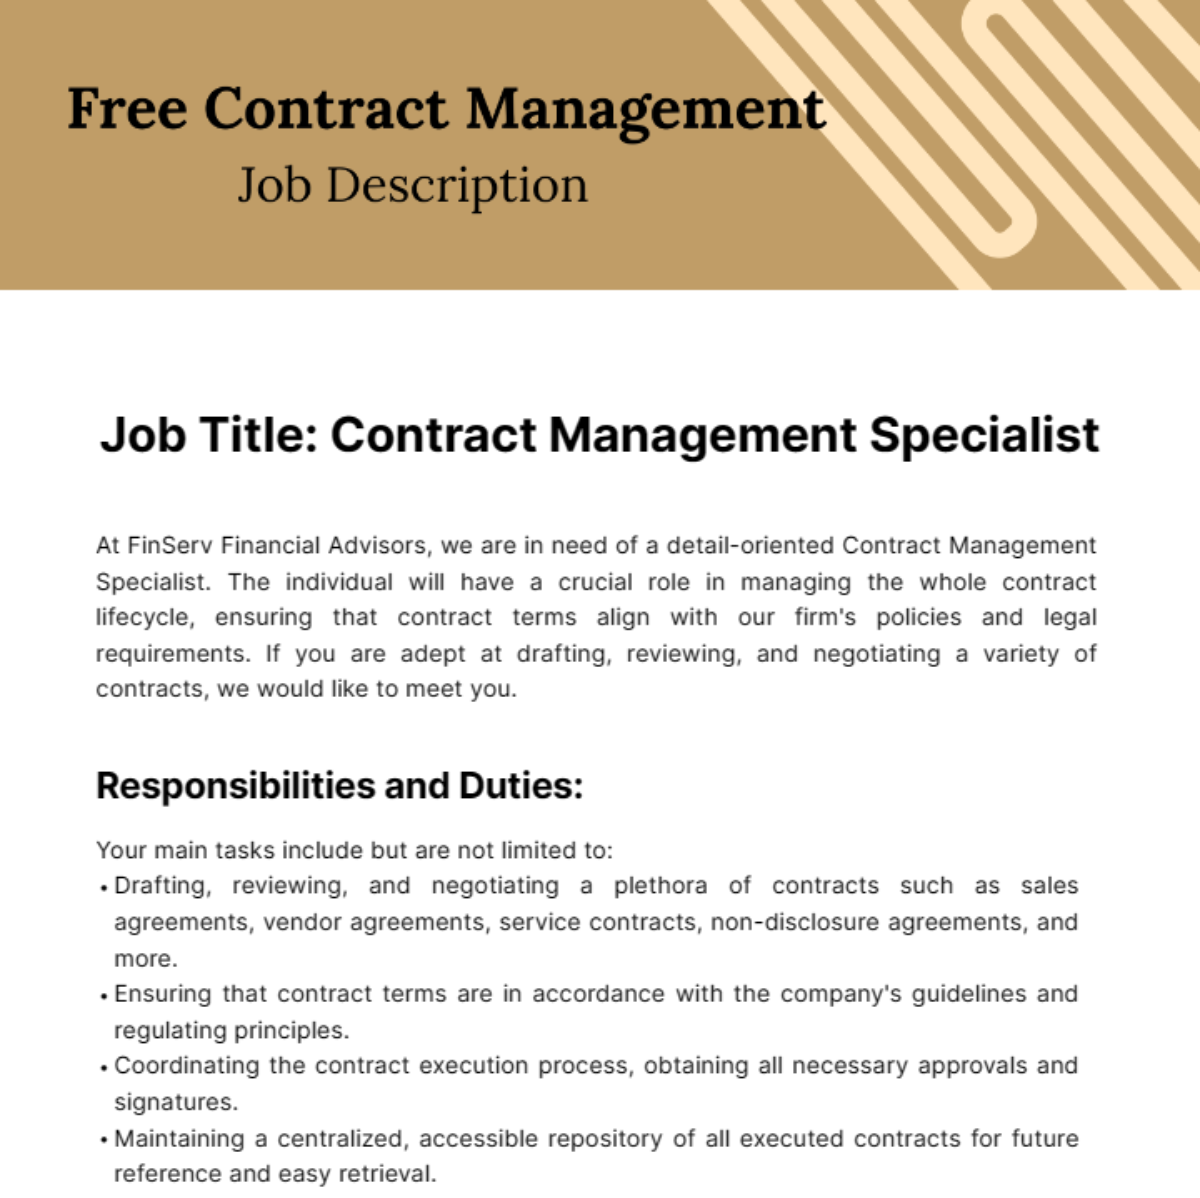 Contract Management Job Description Template